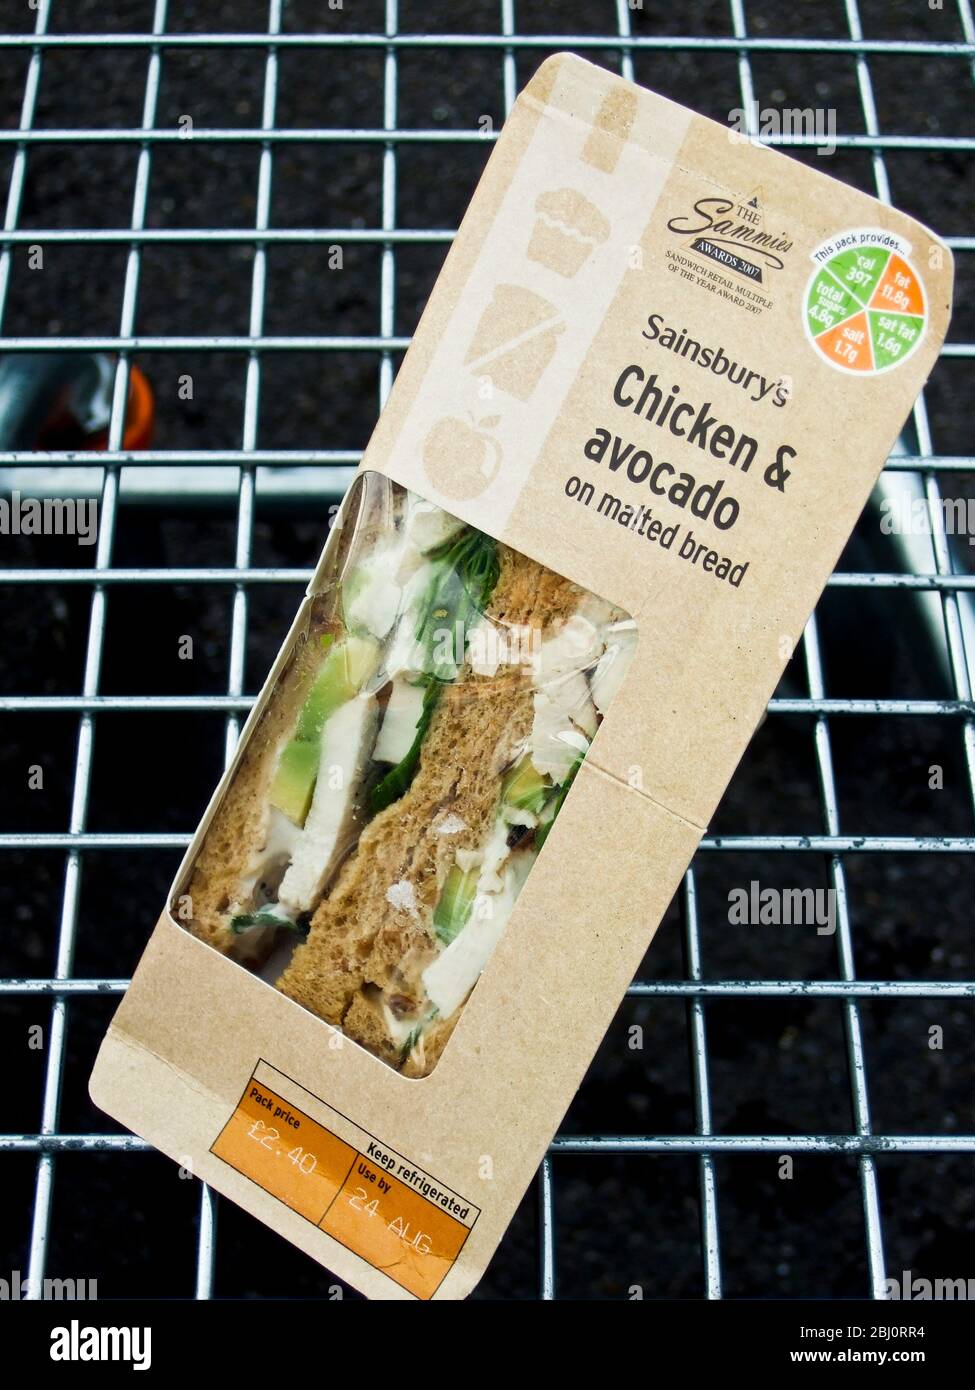 Paket von Sandwiches in Sainsbury's in Supermarkt Trolley gekauft - Stockfoto